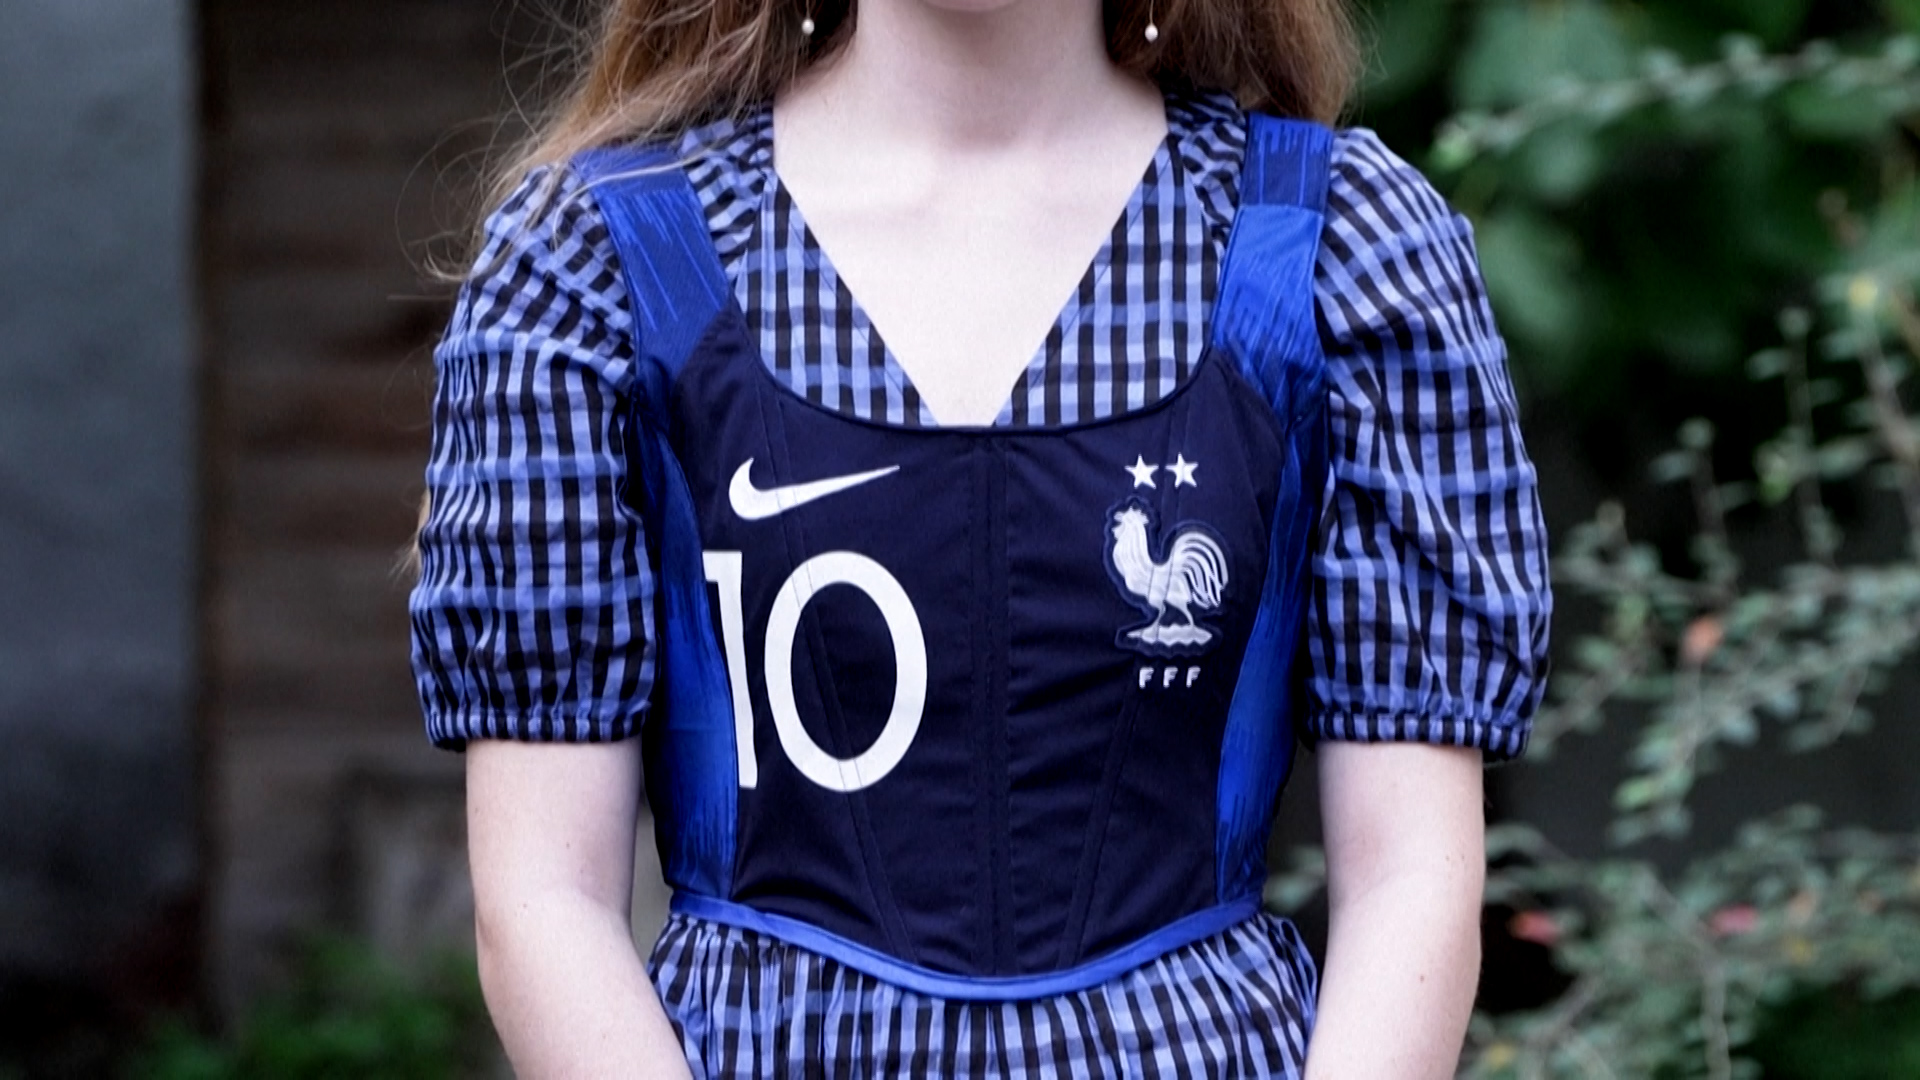 Ce designer parisien transforme des maillots de foot en sacs - L